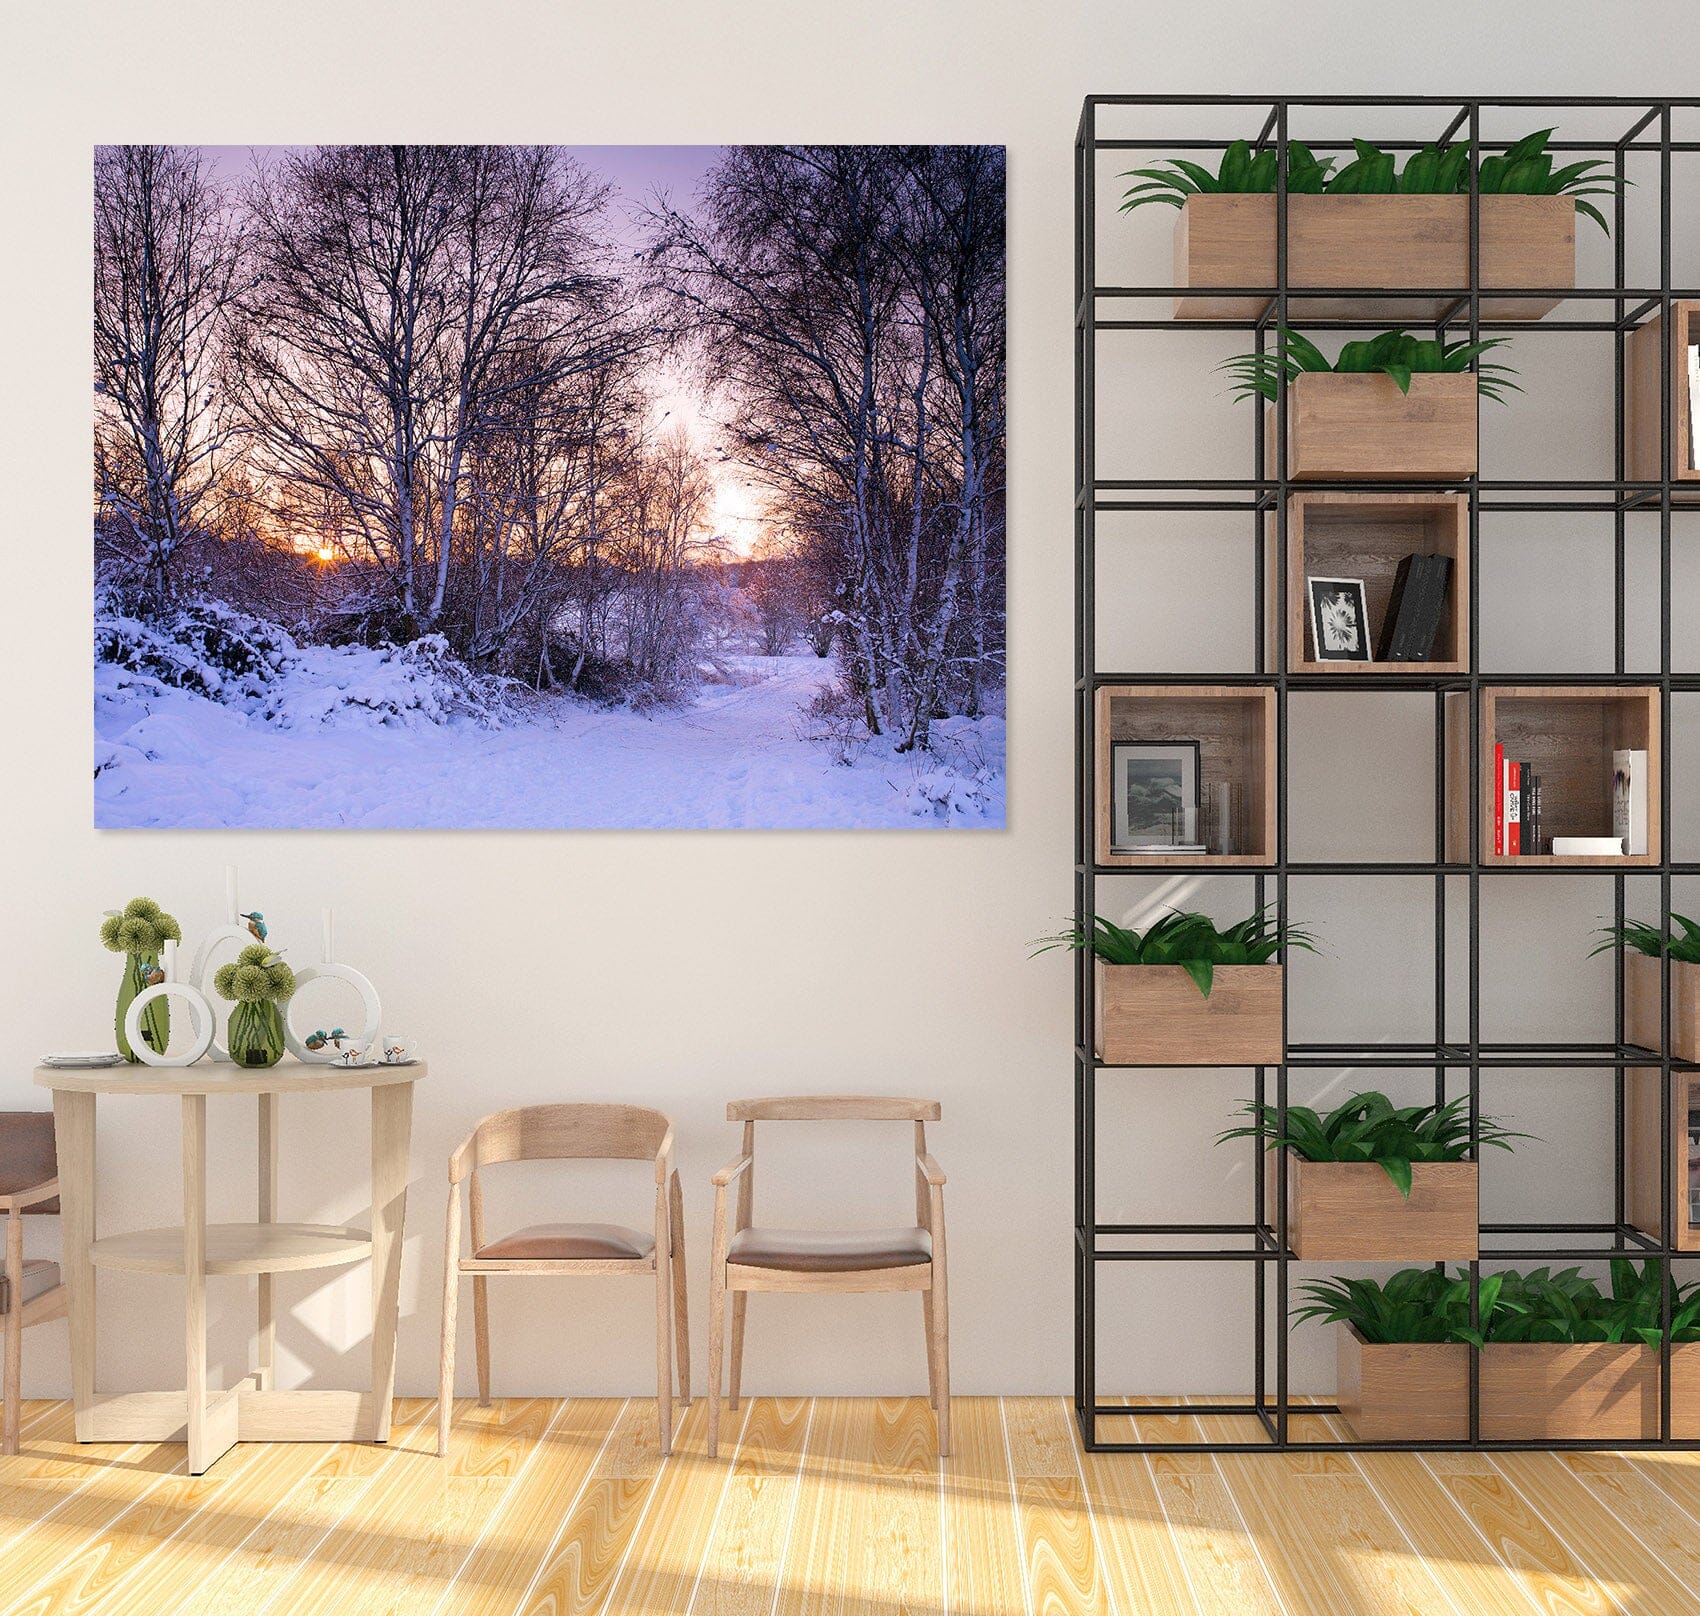 3D Snow Forest 014 Assaf Frank Wall Sticker Wallpaper AJ Wallpaper 2 